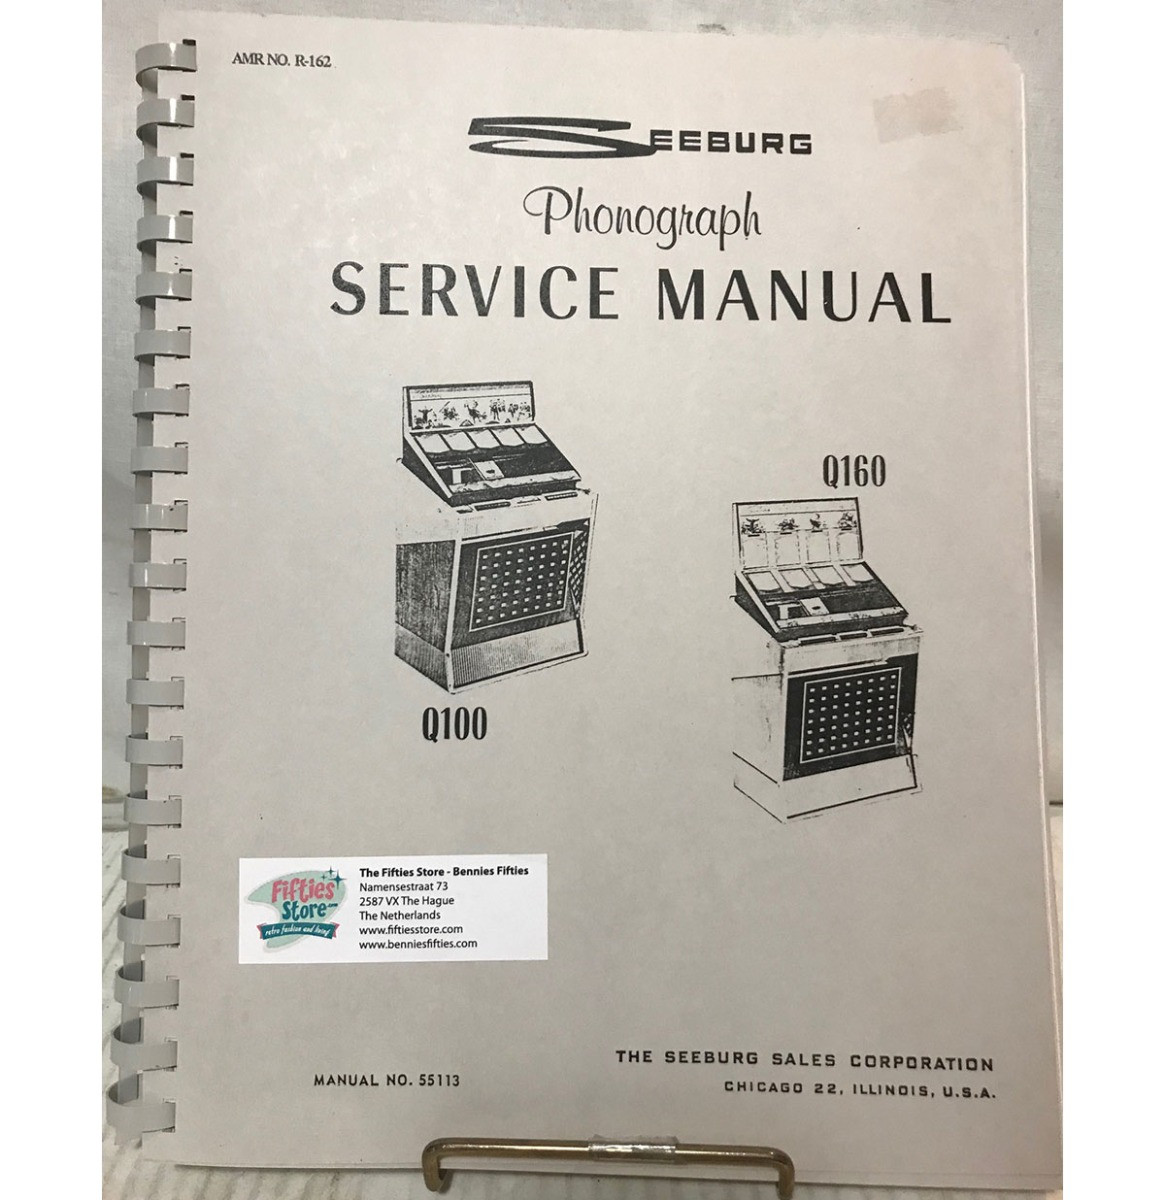 Service Manual - Seeburg Jukebox Model Q100 & Q160